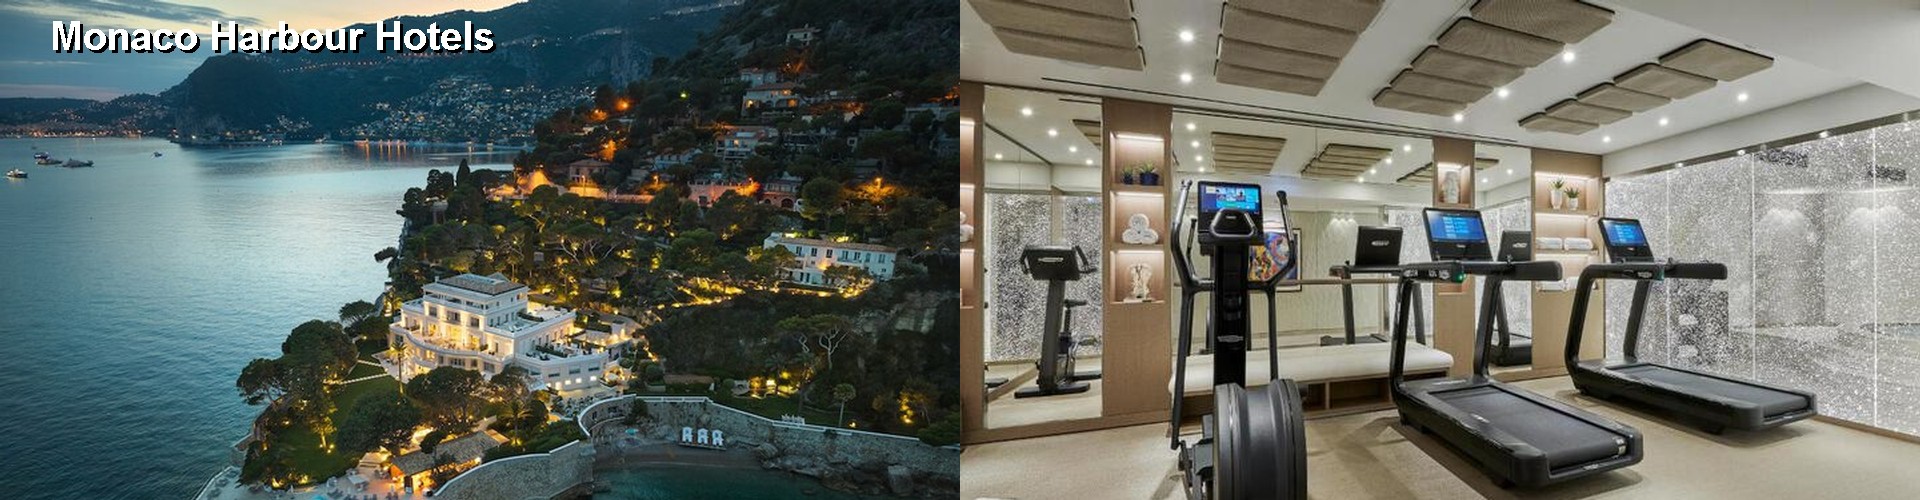 5 Best Hotels near Monaco Harbour